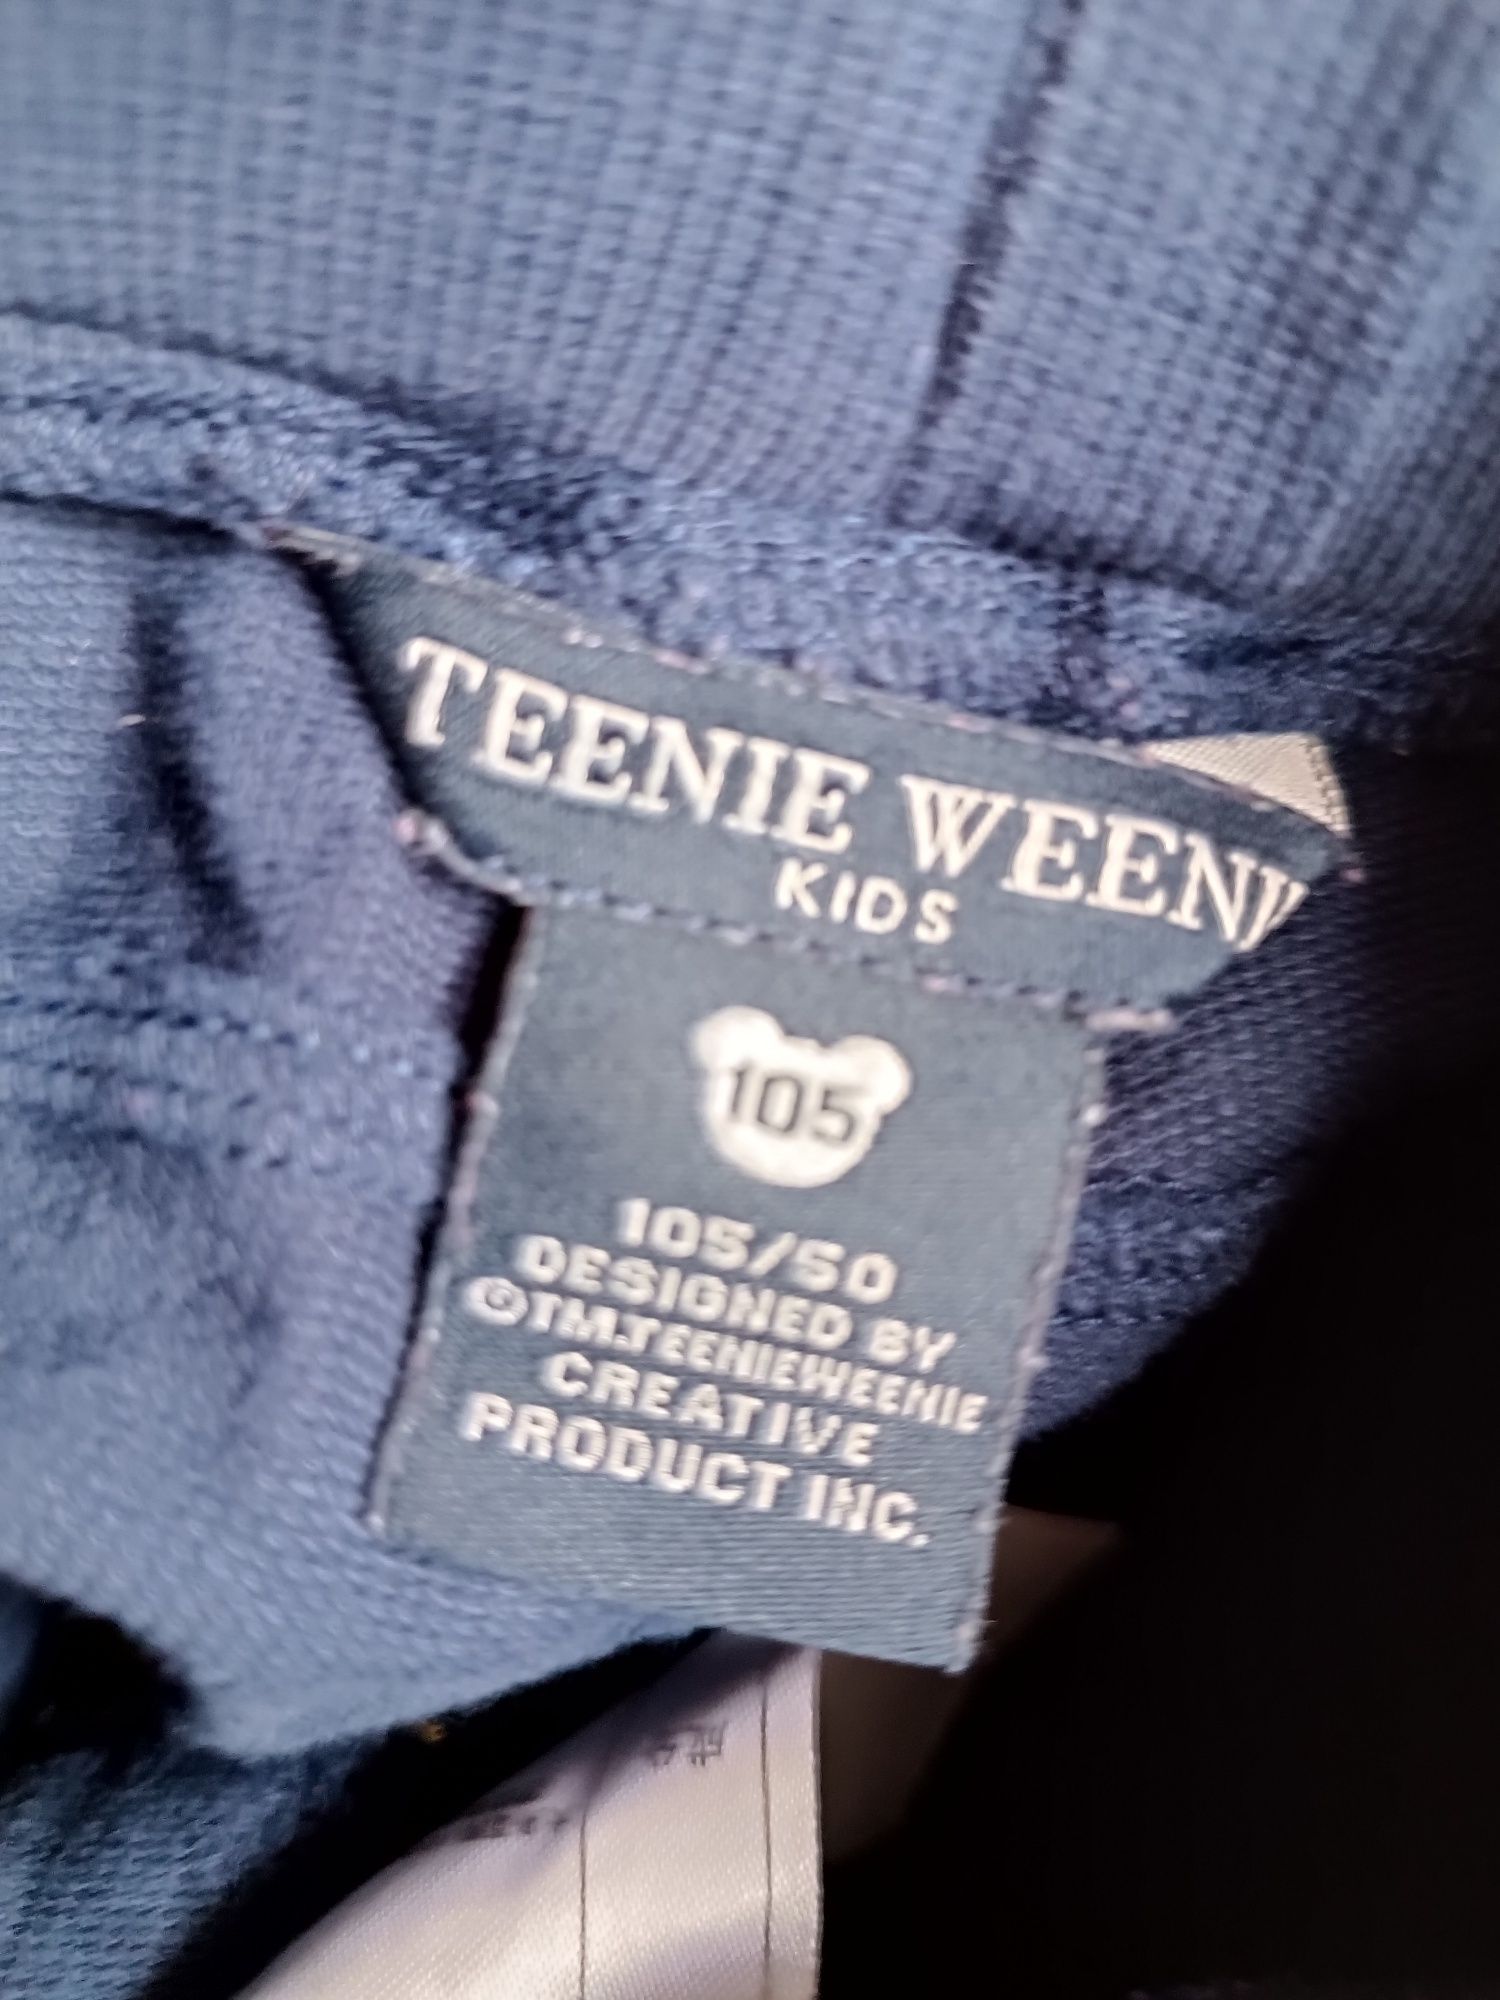 Spodnie dresowe Teenie Weenie rozmiar 105